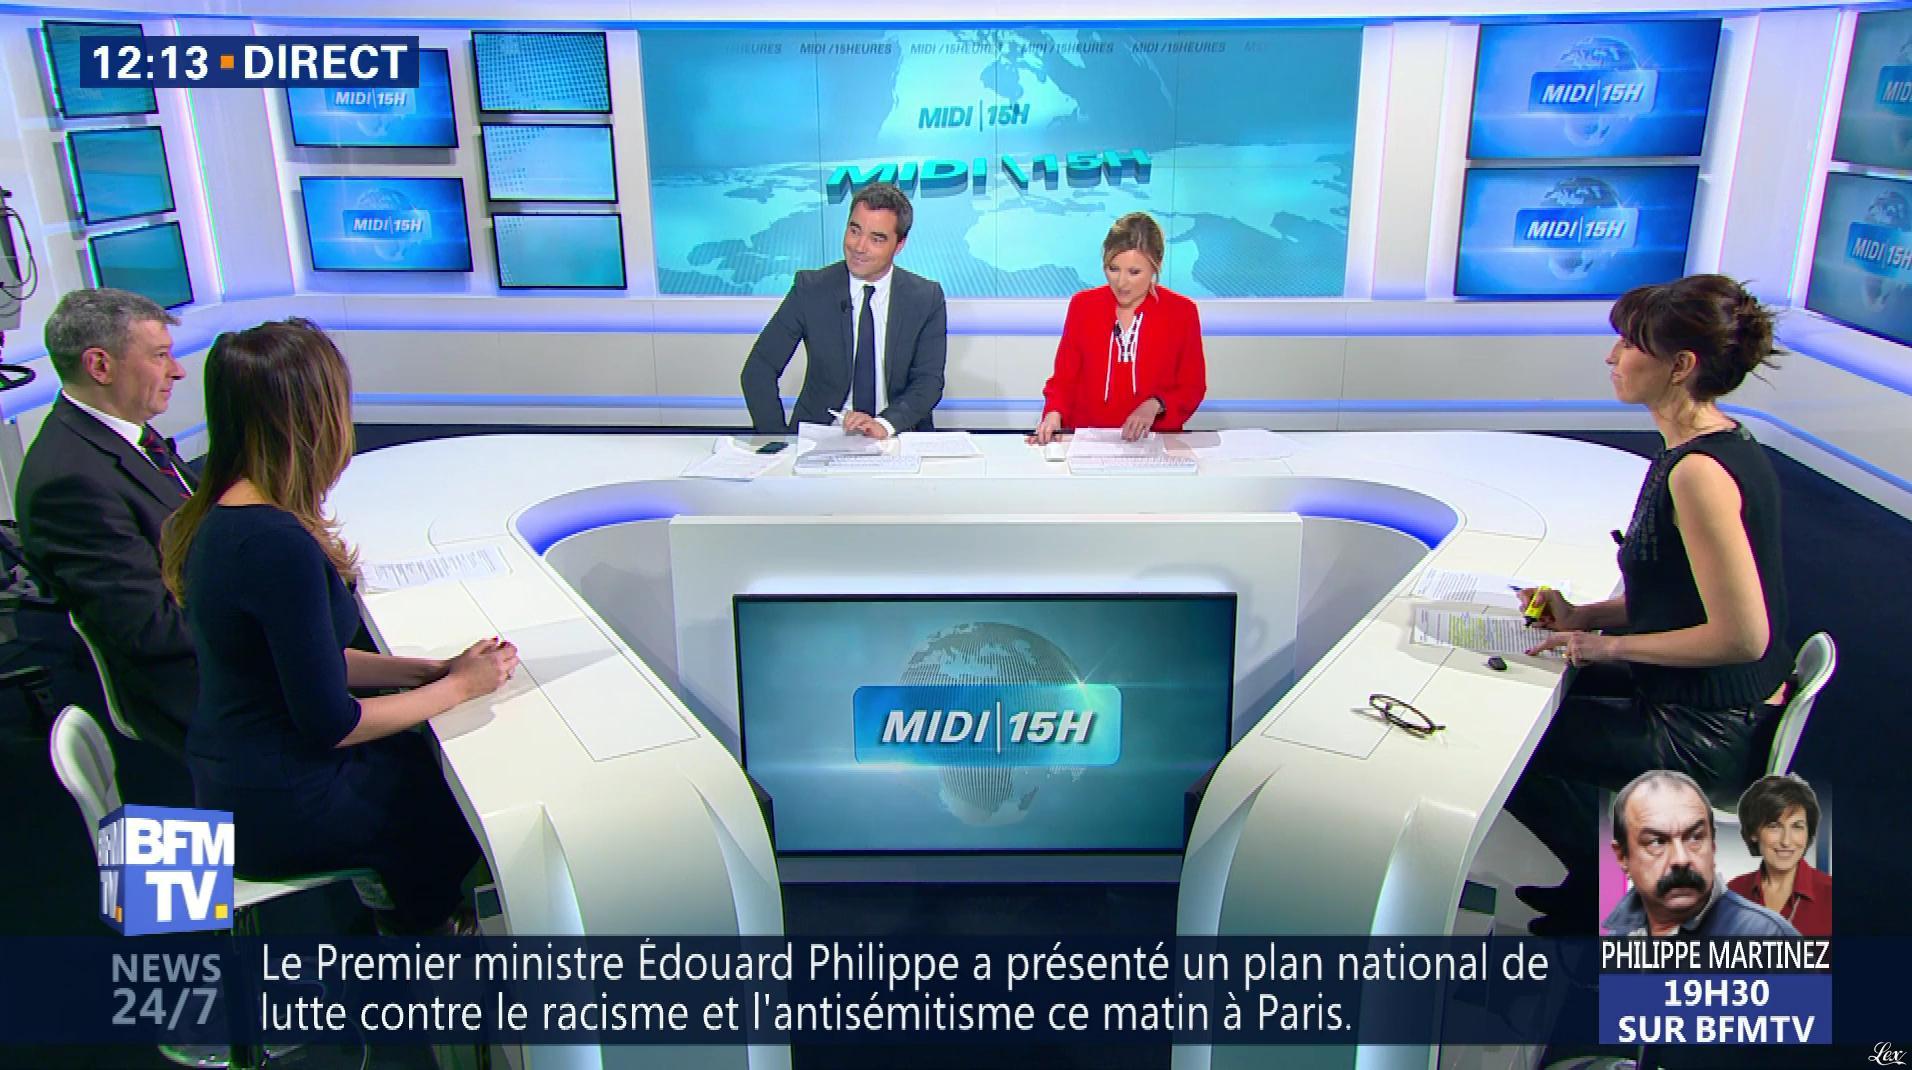 Candice Mahout dans le Midi-15h. Diffusé à la télévision le 09/03/18.